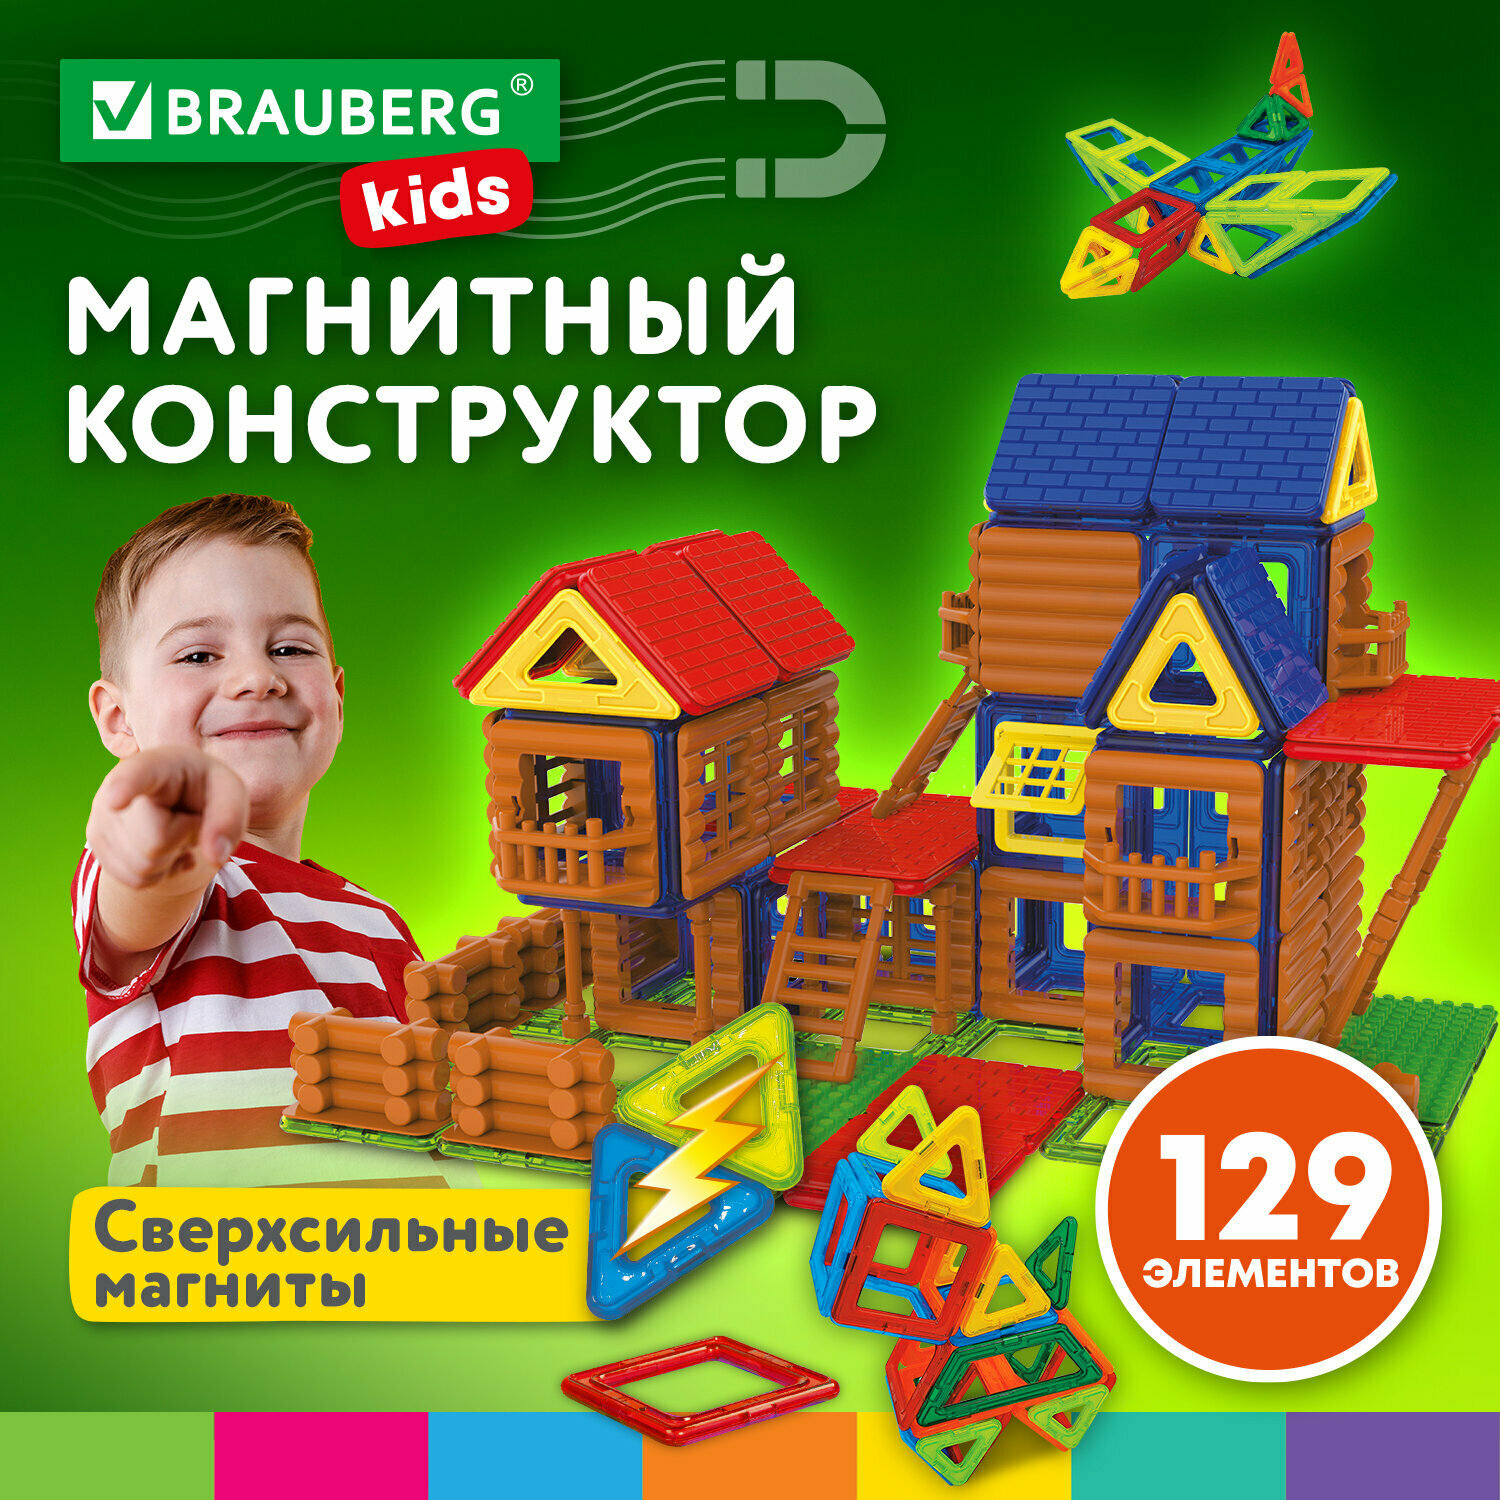 Конструктор магнитный детский развивающий / игрушки для детей Mega Magnetic Build Blocks-129 Построй дом, 129 деталей, Brauberg Kids